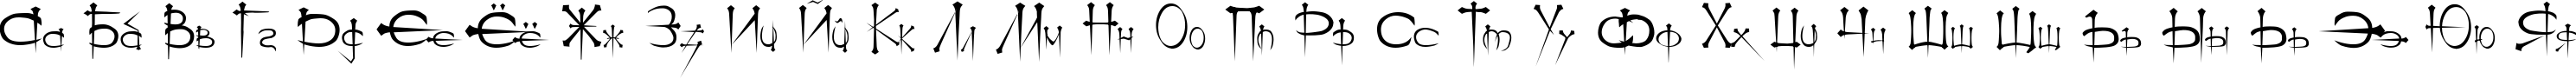 Пример написания русского алфавита шрифтом Ogilvie Cyr